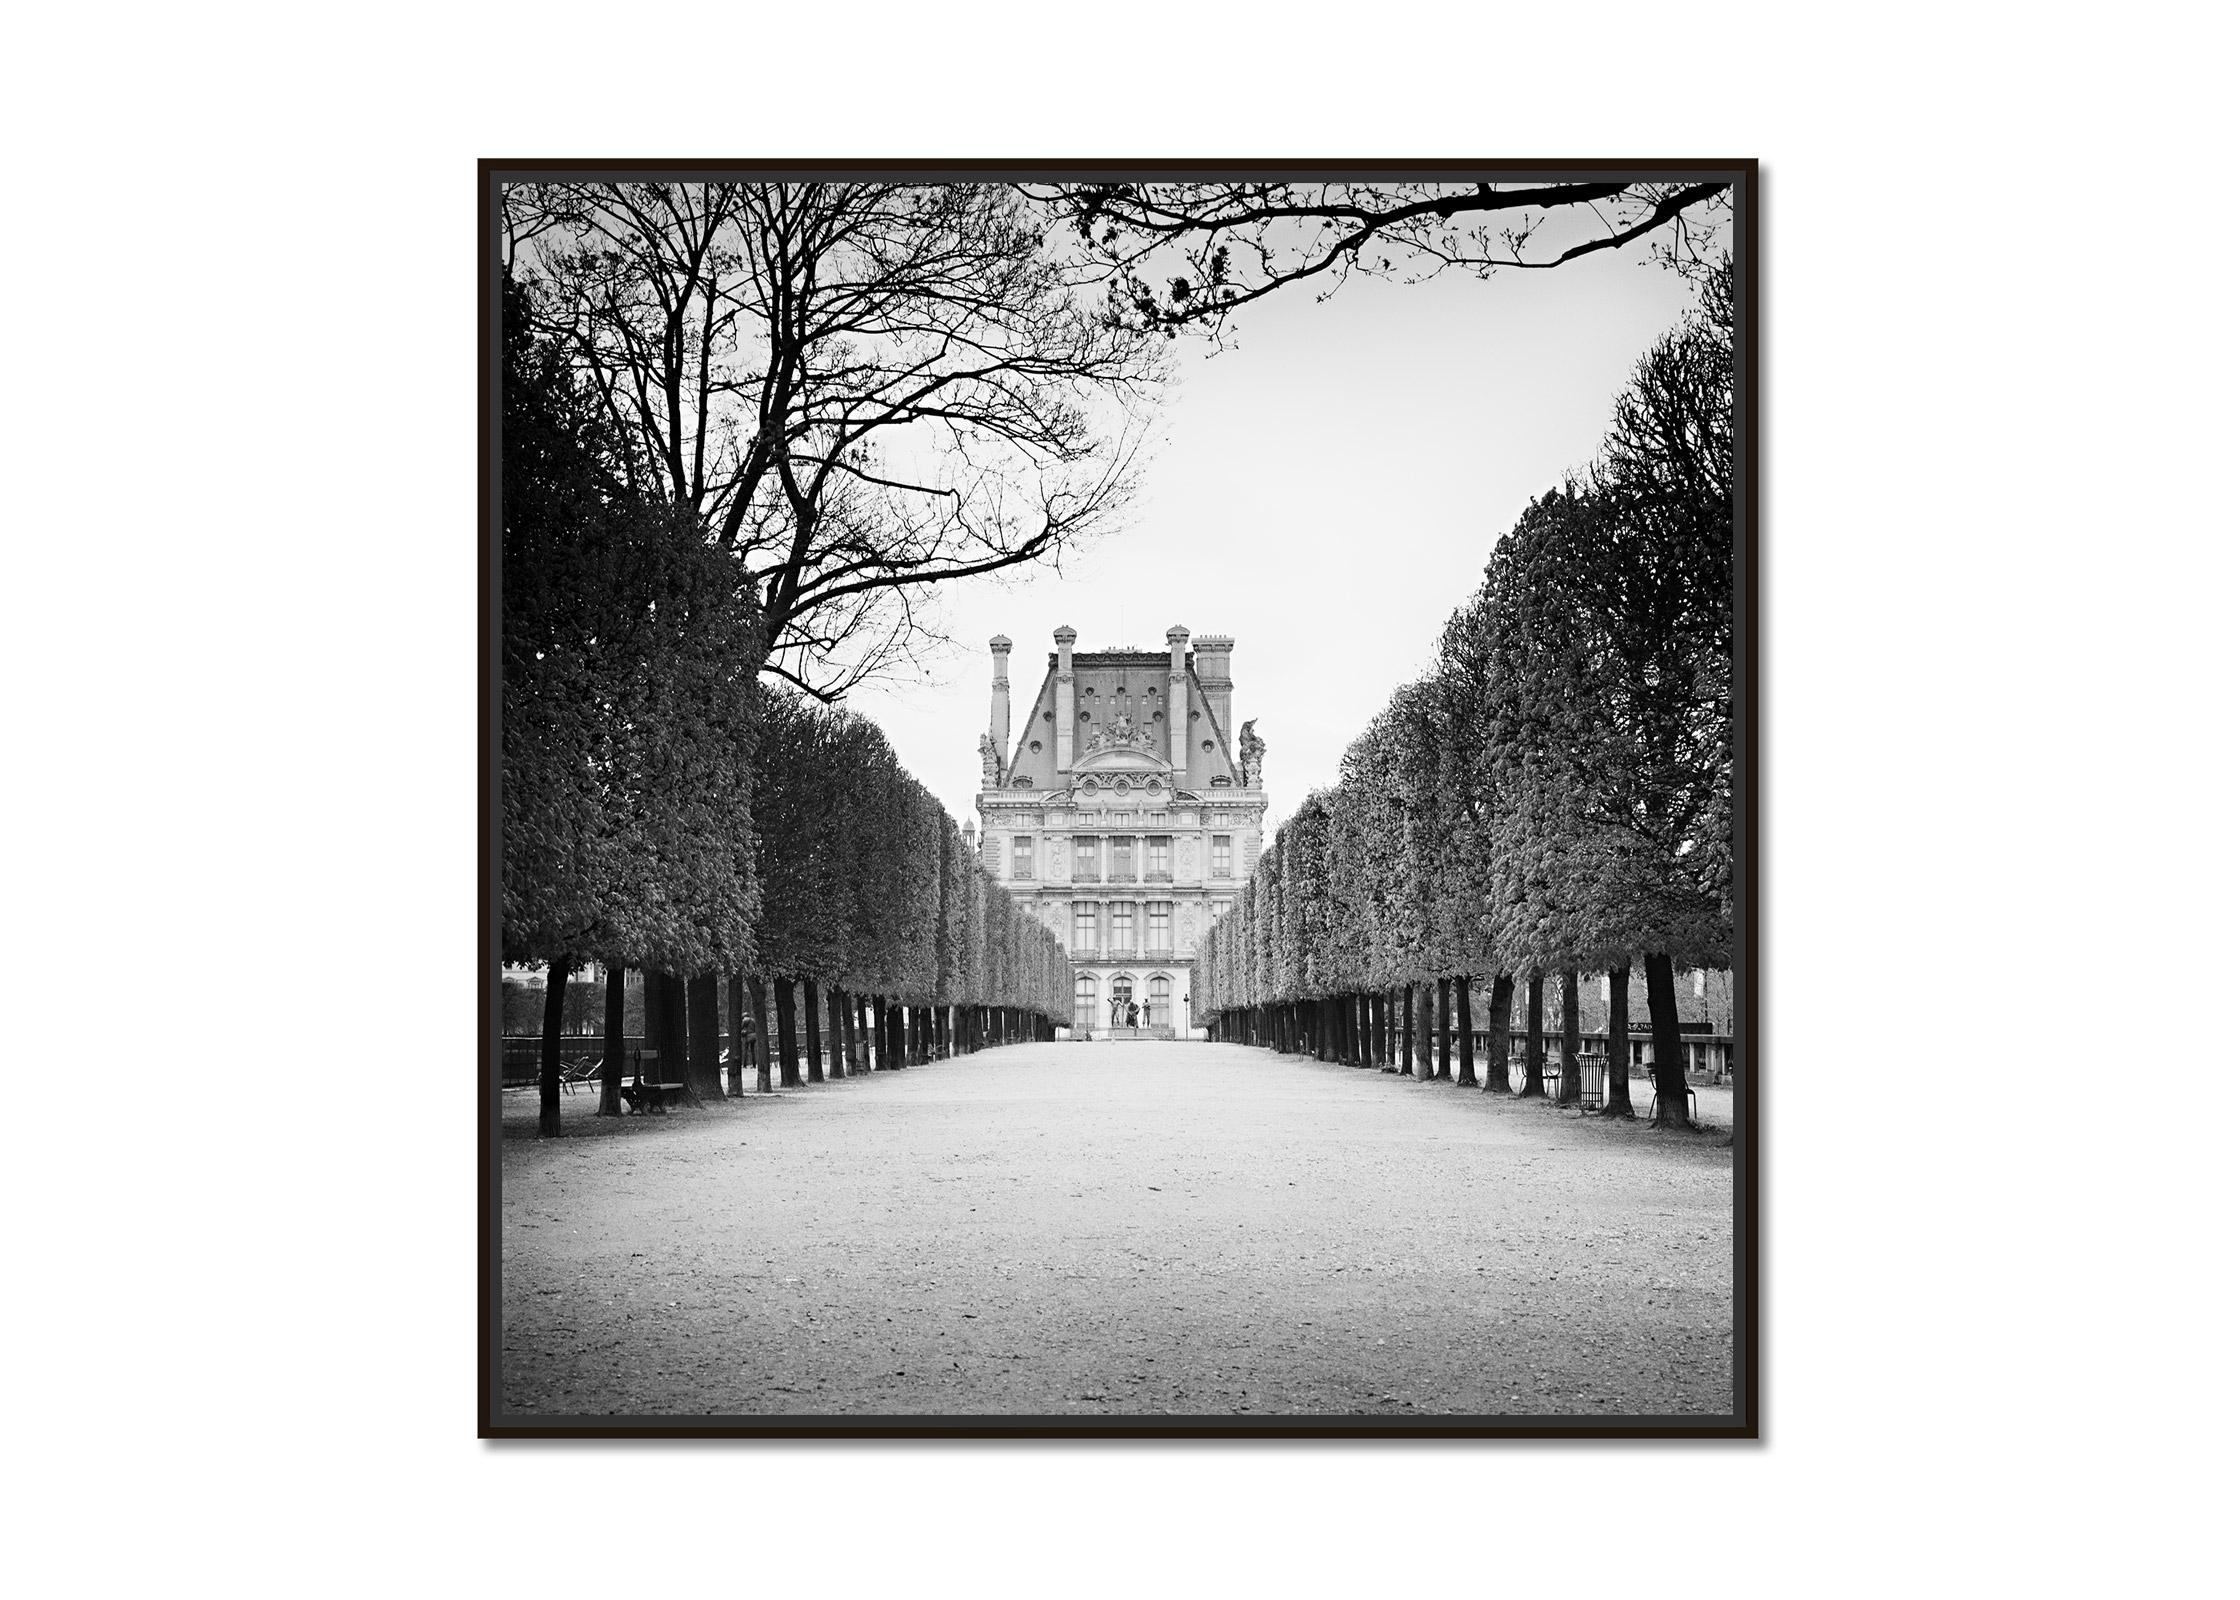 Pavillon de Flore, Paris, France, black and white fineart cityscape photography  - Photograph by Gerald Berghammer